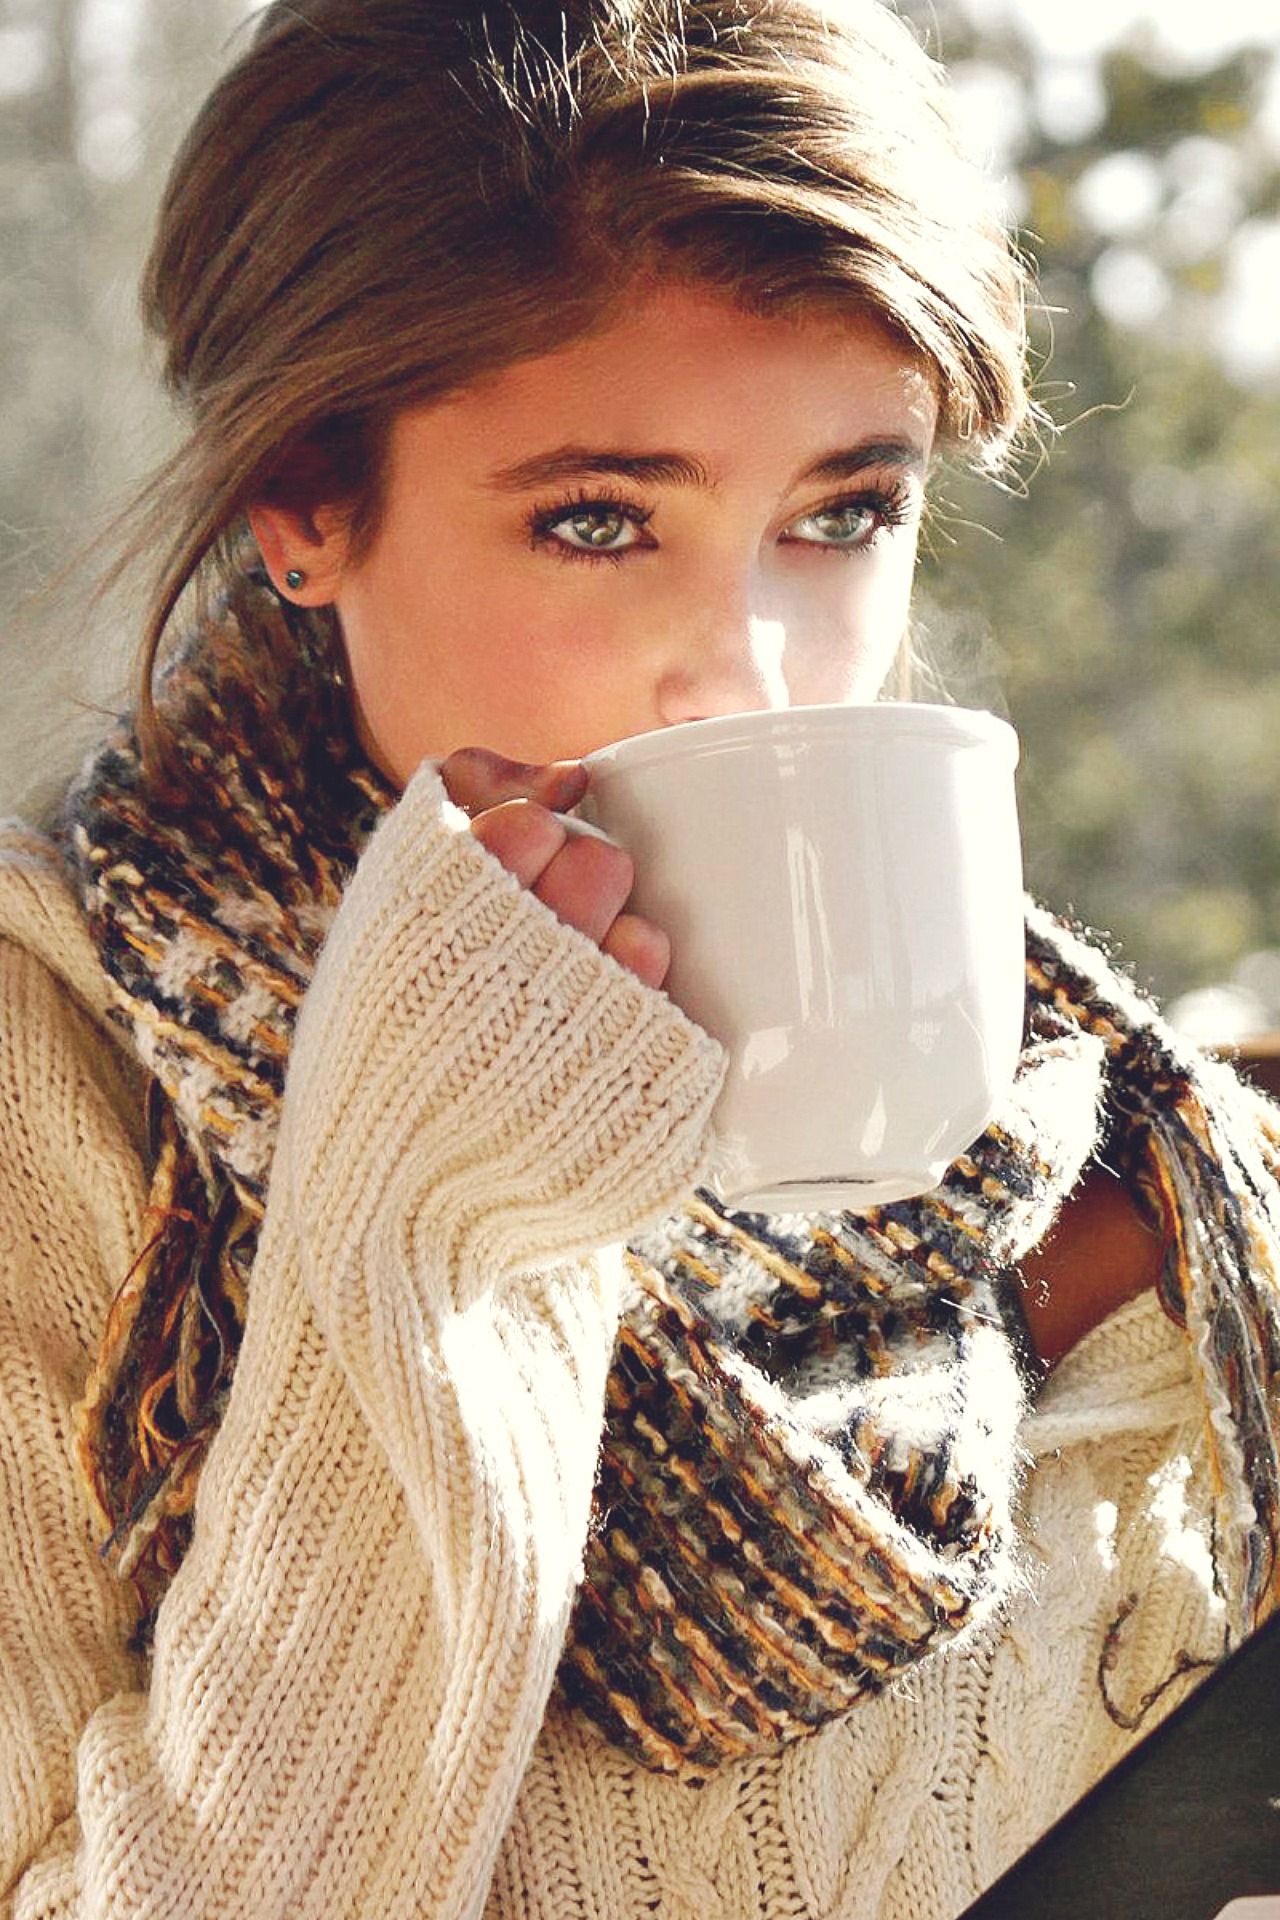 Фото девушек с кофе. Тейлор Хилл с кофе. Тейлор Хилл в свитере. Девушка в свитере. Девушка с кофе.